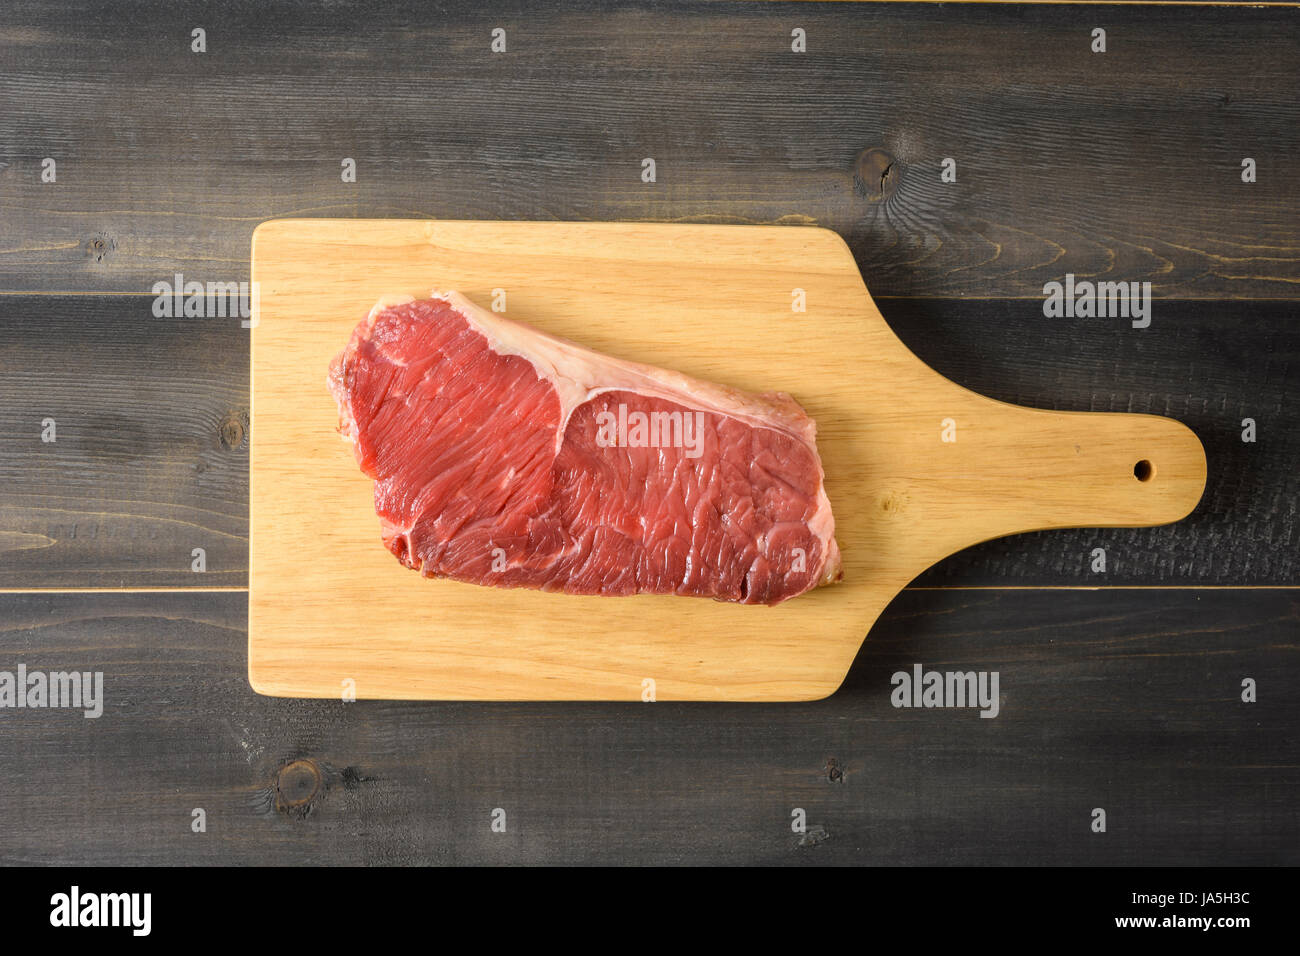 Faux filet de boeuf cru steak sur une planche à découper en bois, vue du dessus sur Banque D'Images